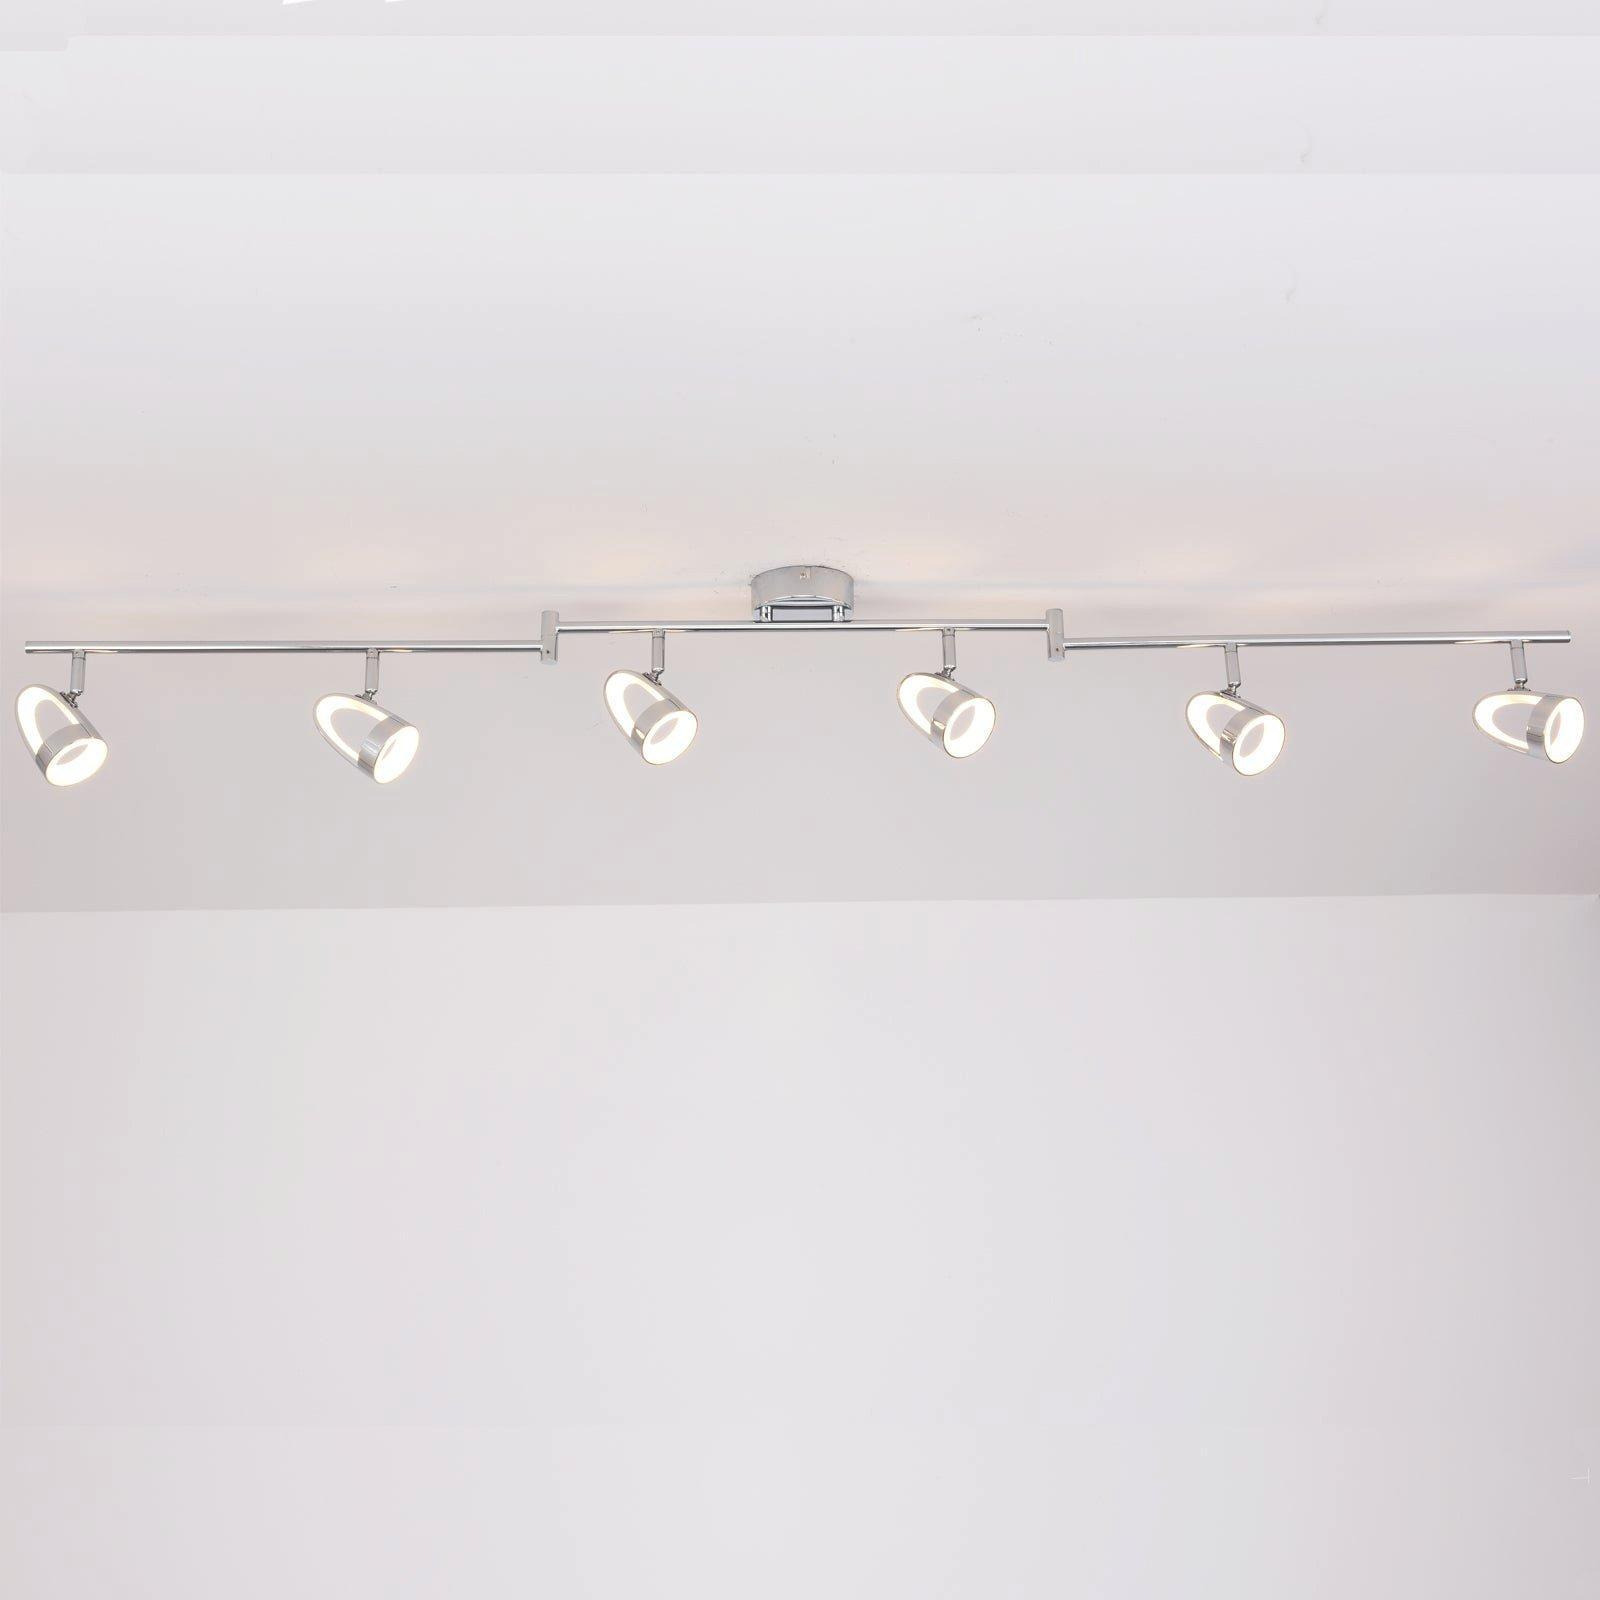 LED 6 Way Adjustable Bar Ceiling Spotlights Polished Chrome Finish - image 1